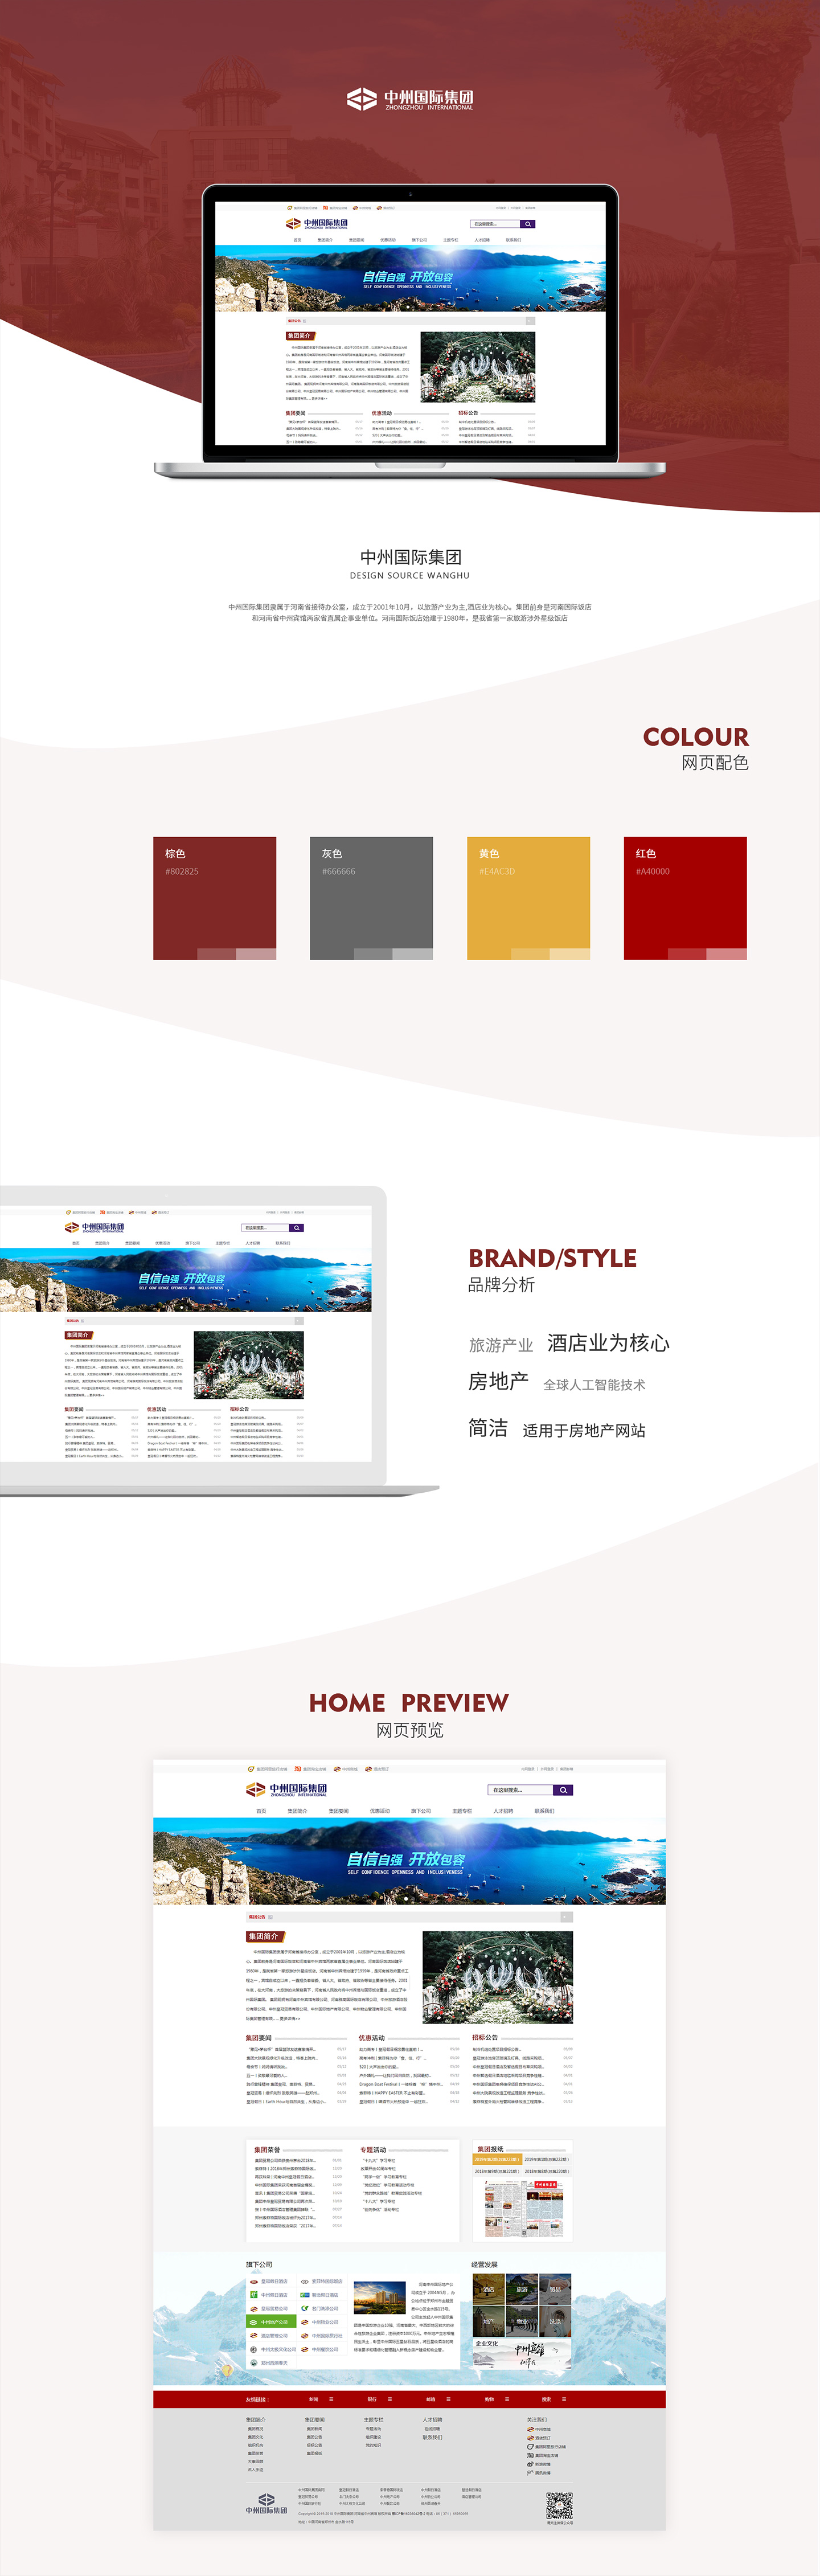 中州国际集团-万户网络设计制作网站